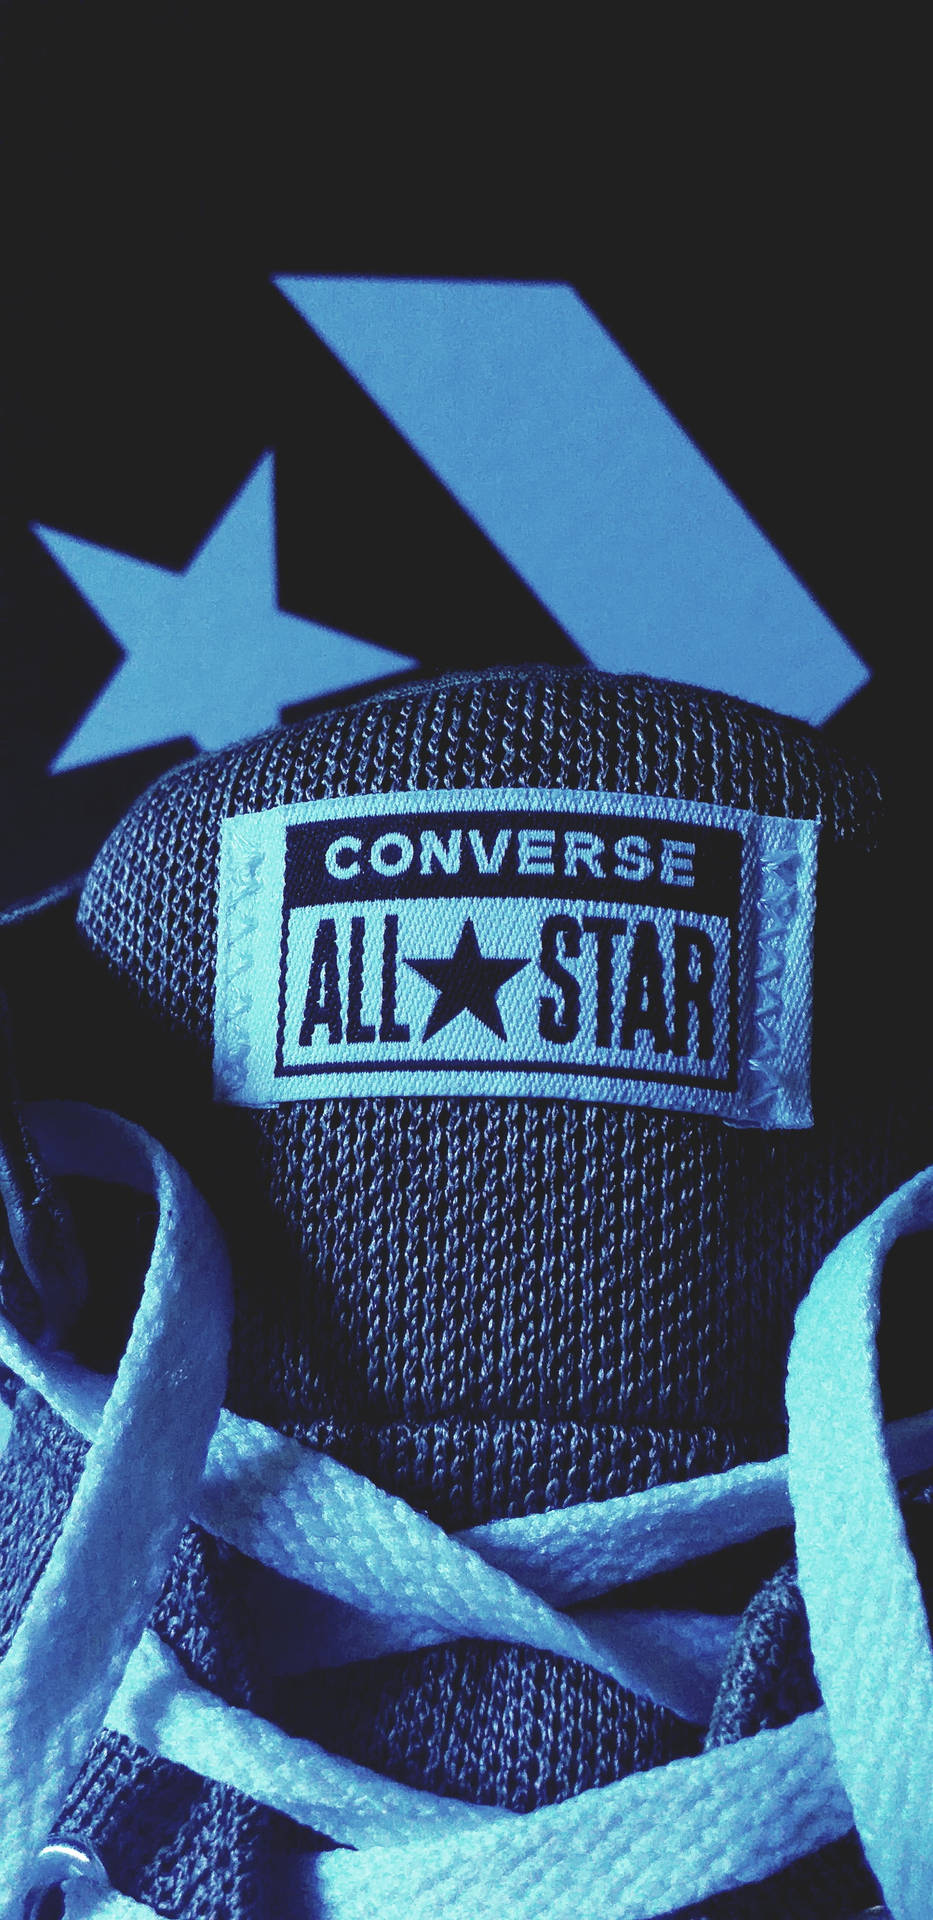 Blå All-star Converse Logo Wallpaper